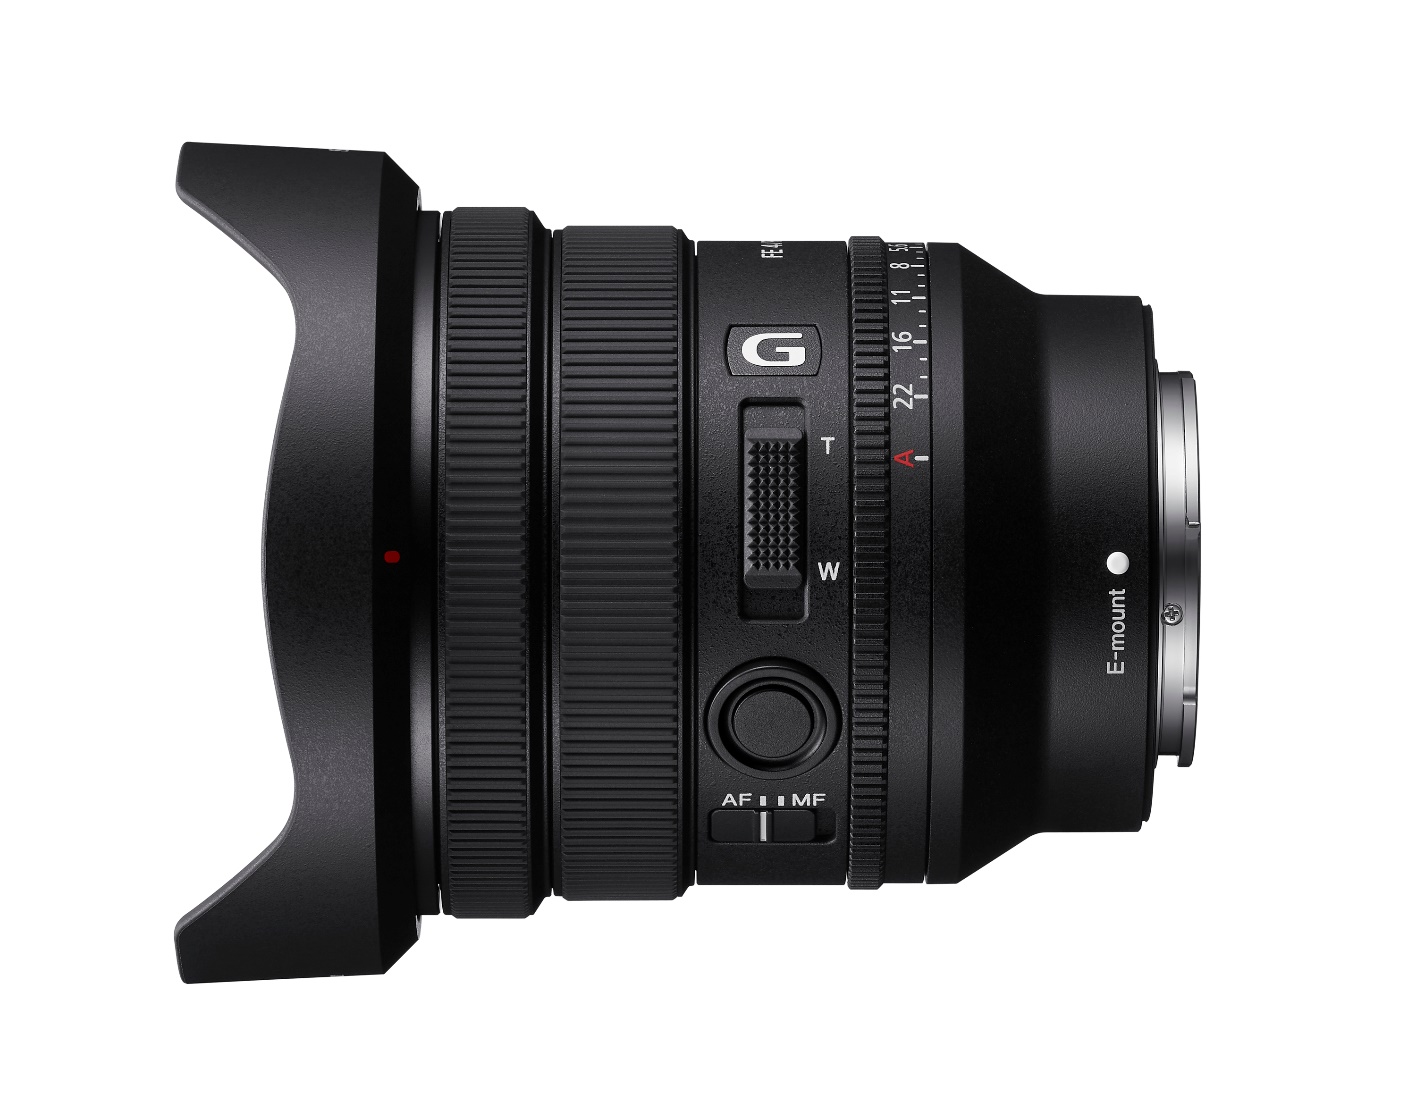 Sony ra mắt FE PZ 16-35mm F4 G - ống kính zoom điện góc rộng với khẩu độ cố định F4 gọn nhẹ bậc nhất thế giới - Ảnh 4.